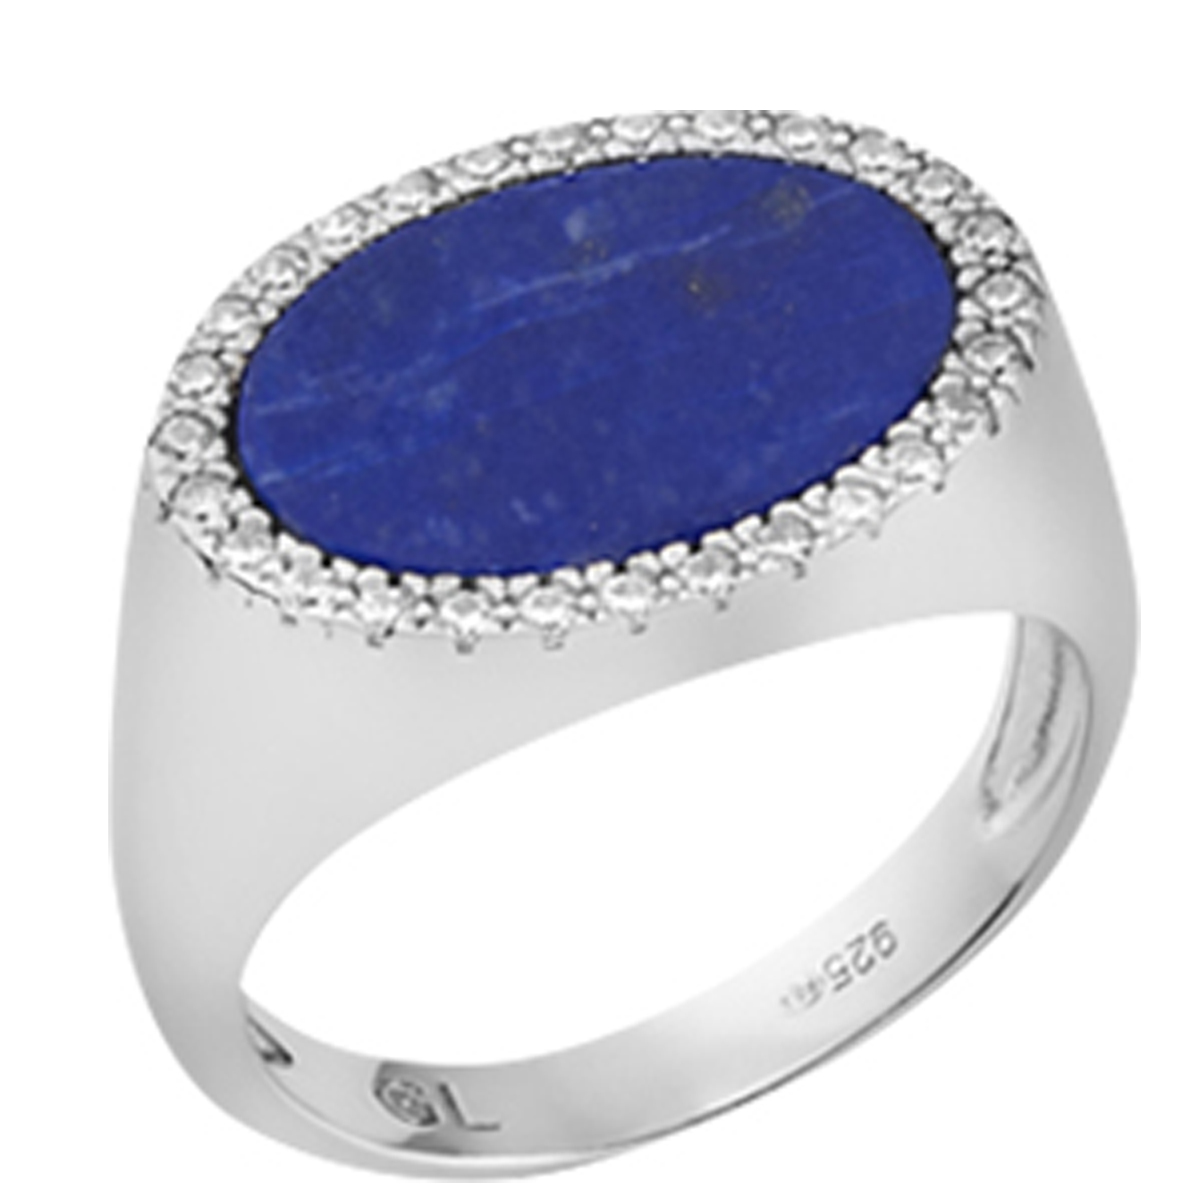 Bague argent \'Sissi\' bleu lapis lazuli blanc argenté (rhodié) - 18x13 mm - [Q7925]